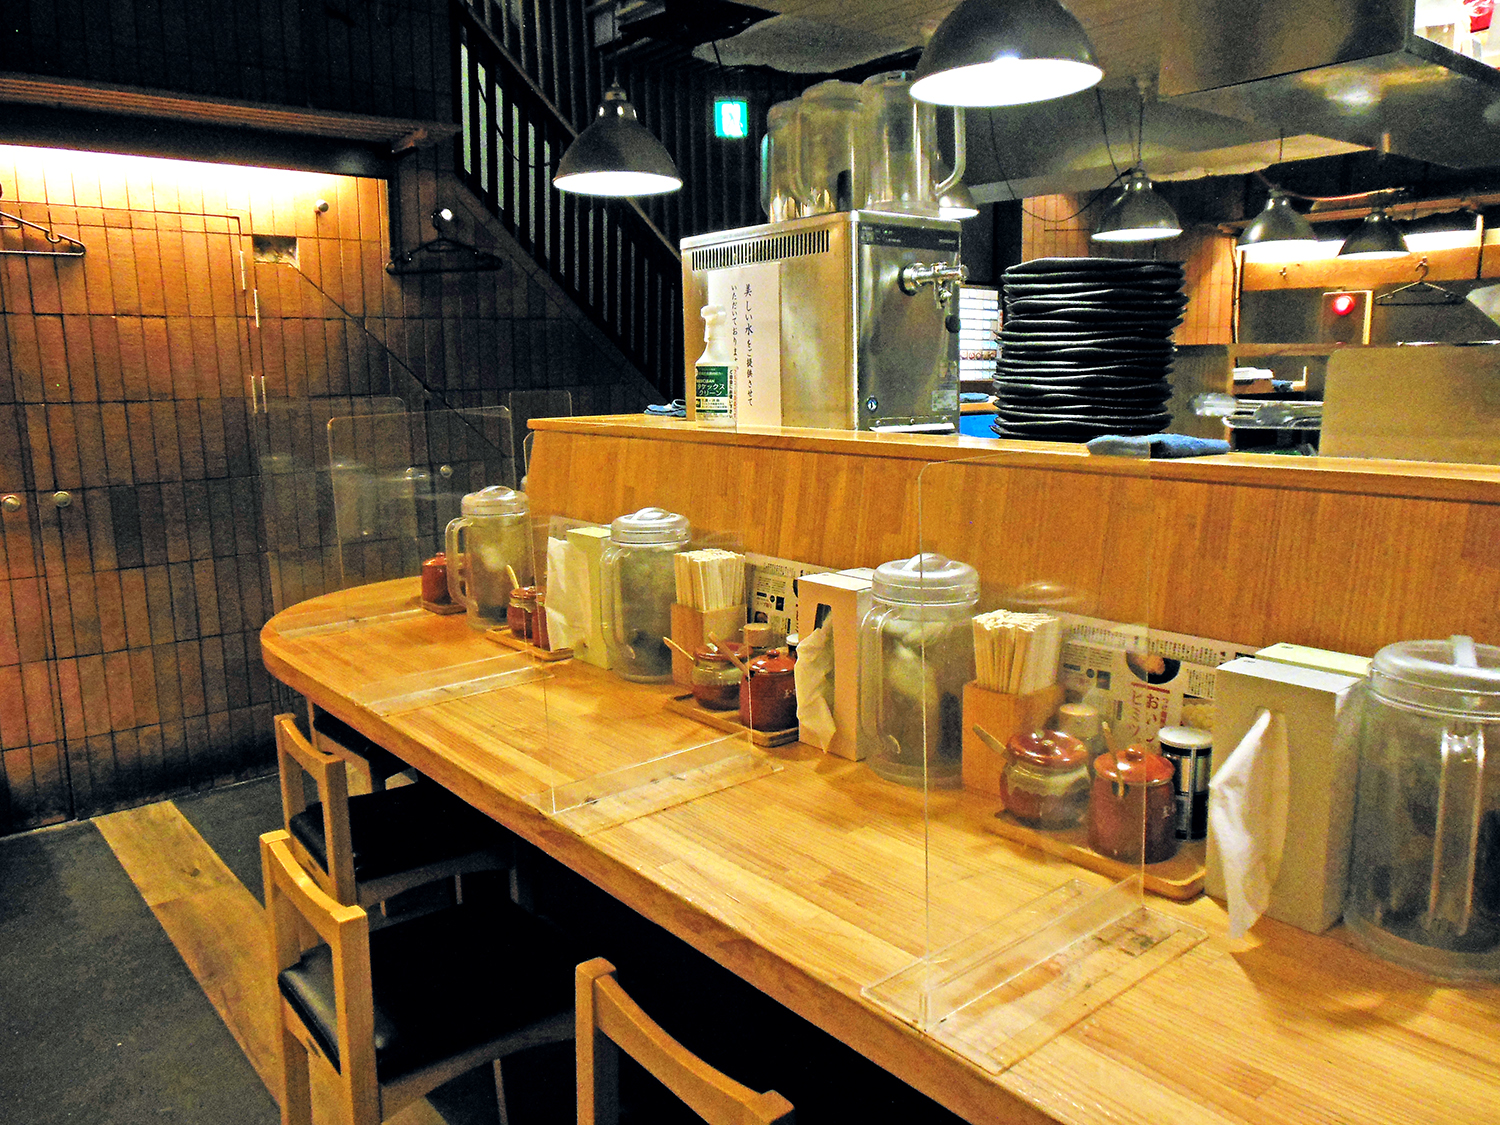 つけ麺屋 やすべえ 秋葉原店』のつけ麺は、おいしい麺と自家製の味に